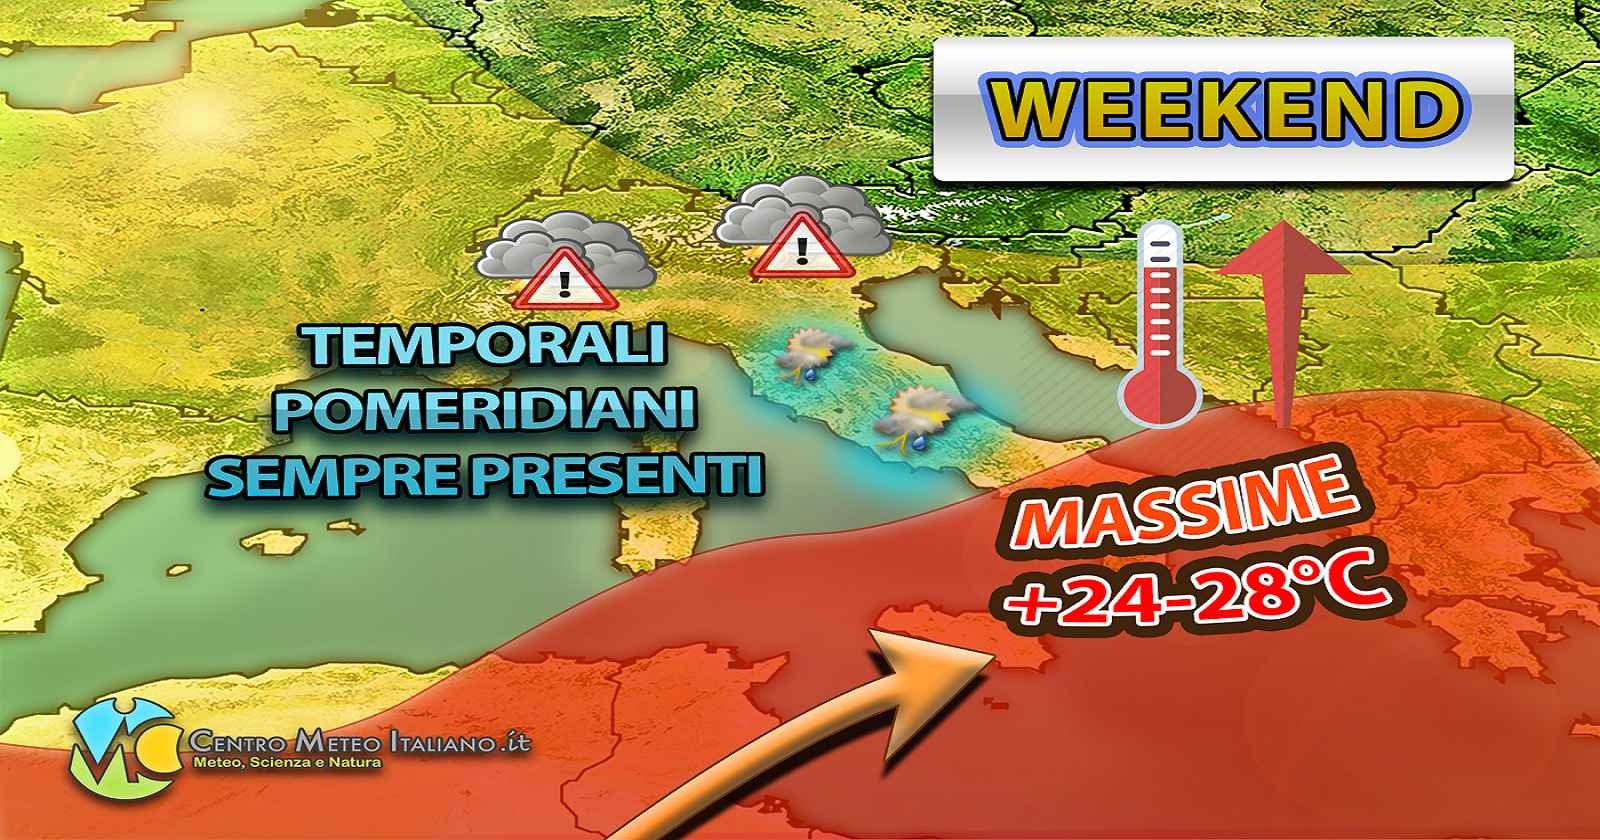 Meteo Italia - inizia l'estate tra caldo senza eccessi e temporali pomeridiani